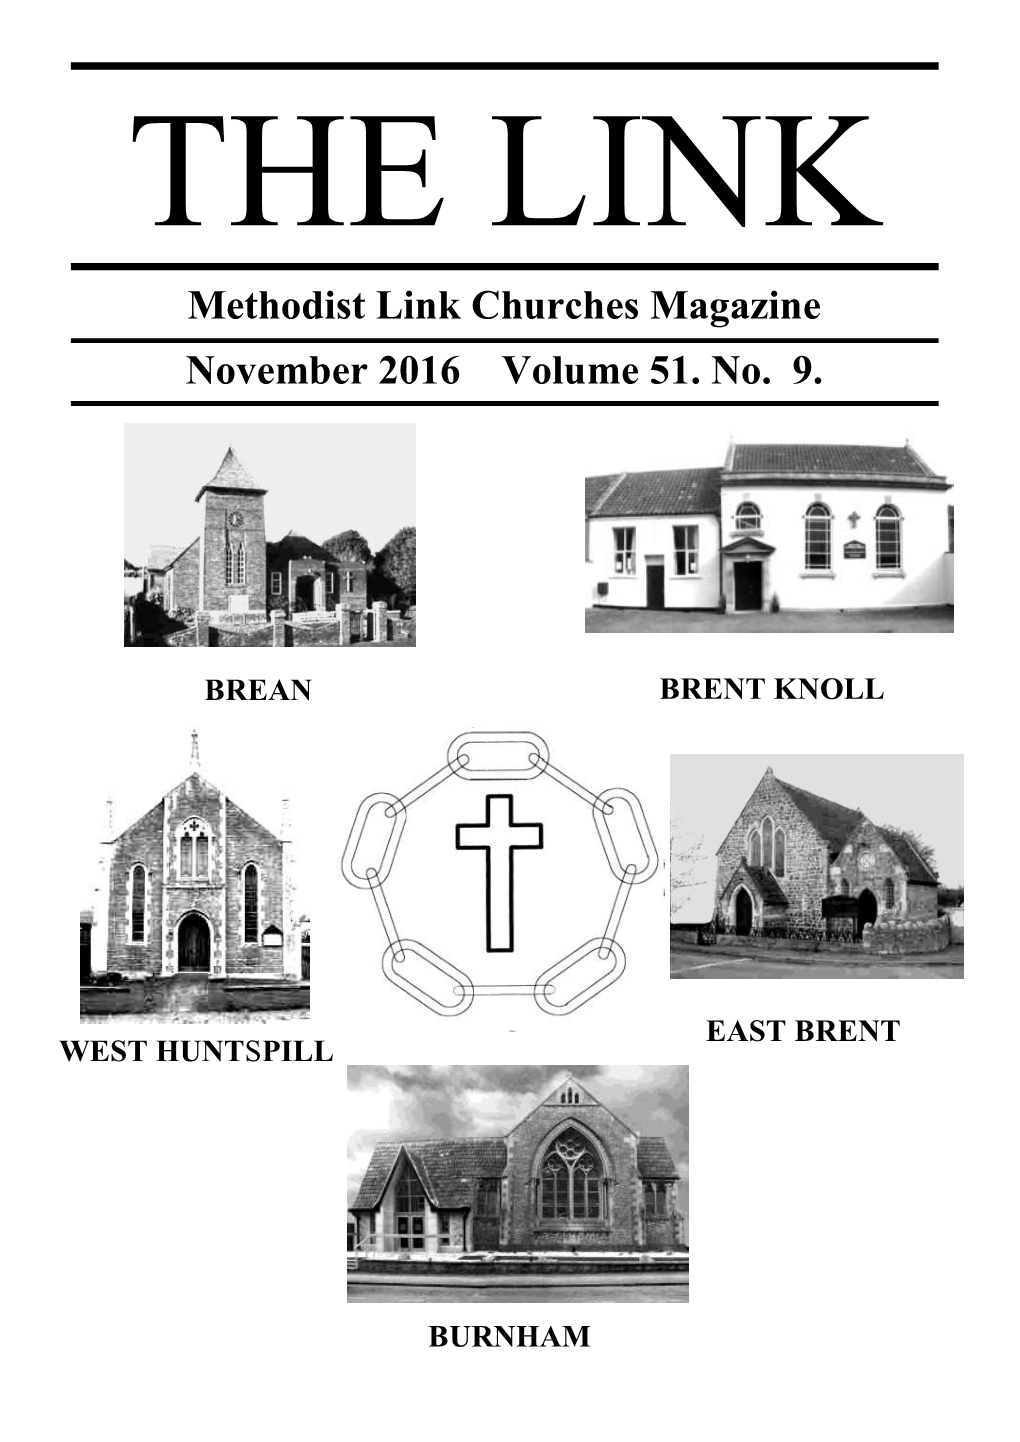 Methodist Link Churches Magazine November 2016 Volume 51. No. 9